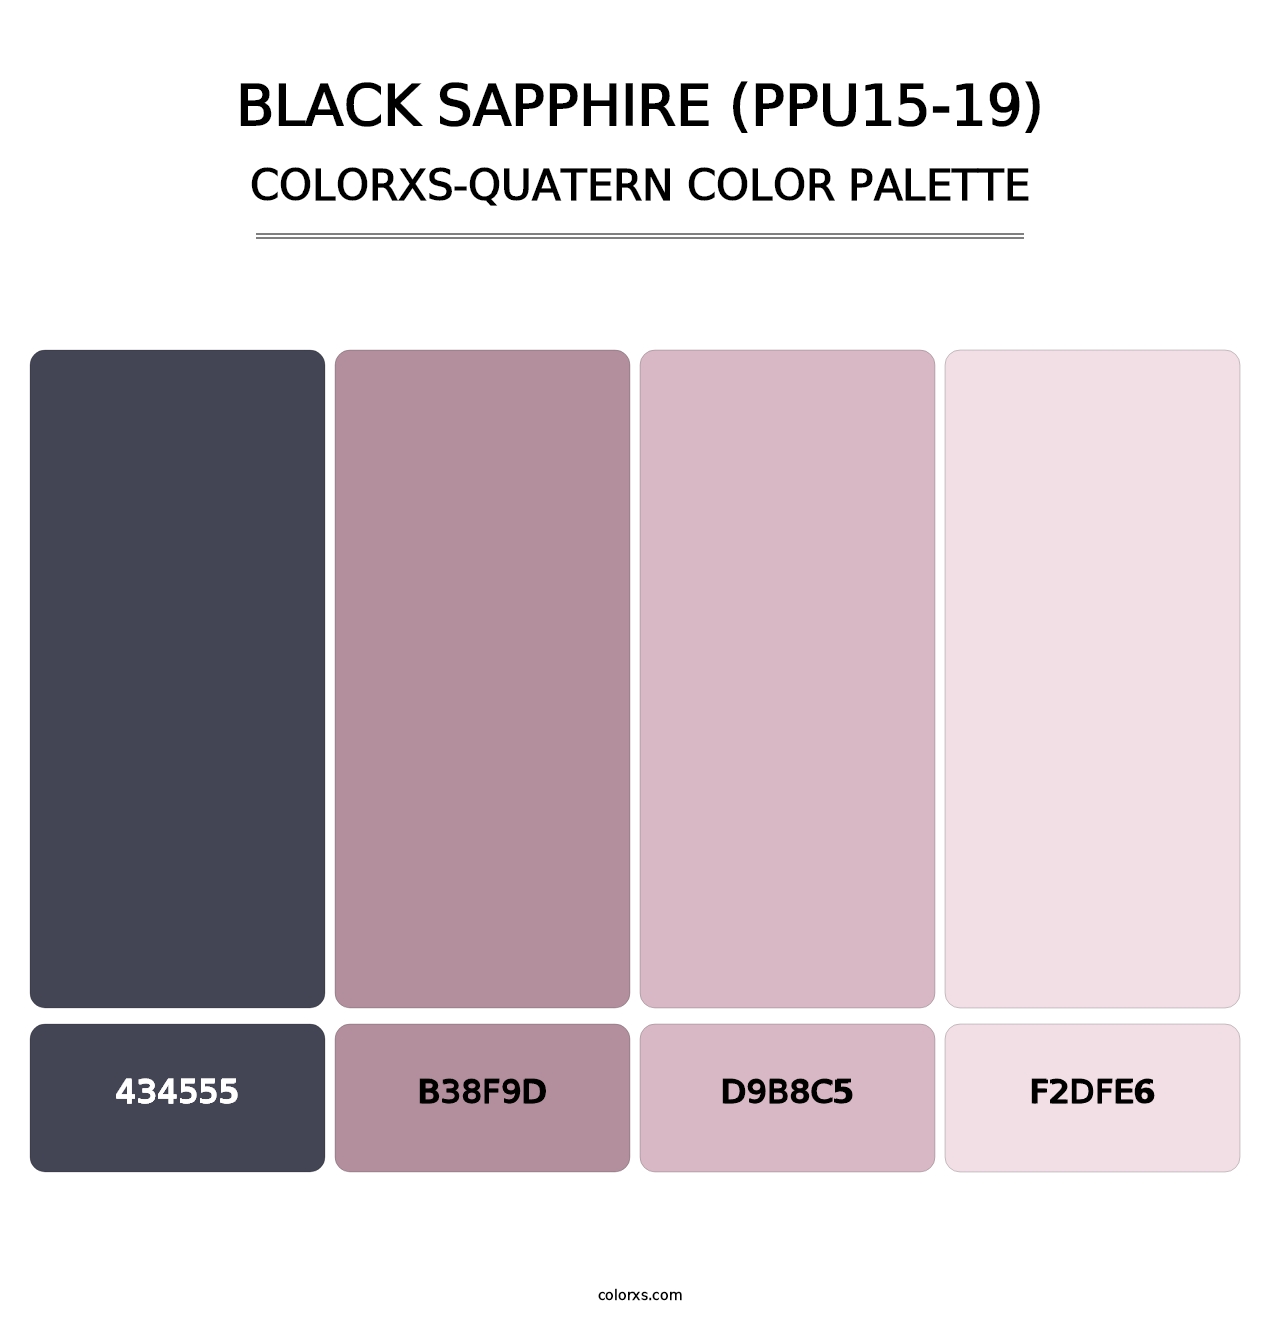 Black Sapphire (PPU15-19) - Colorxs Quatern Palette